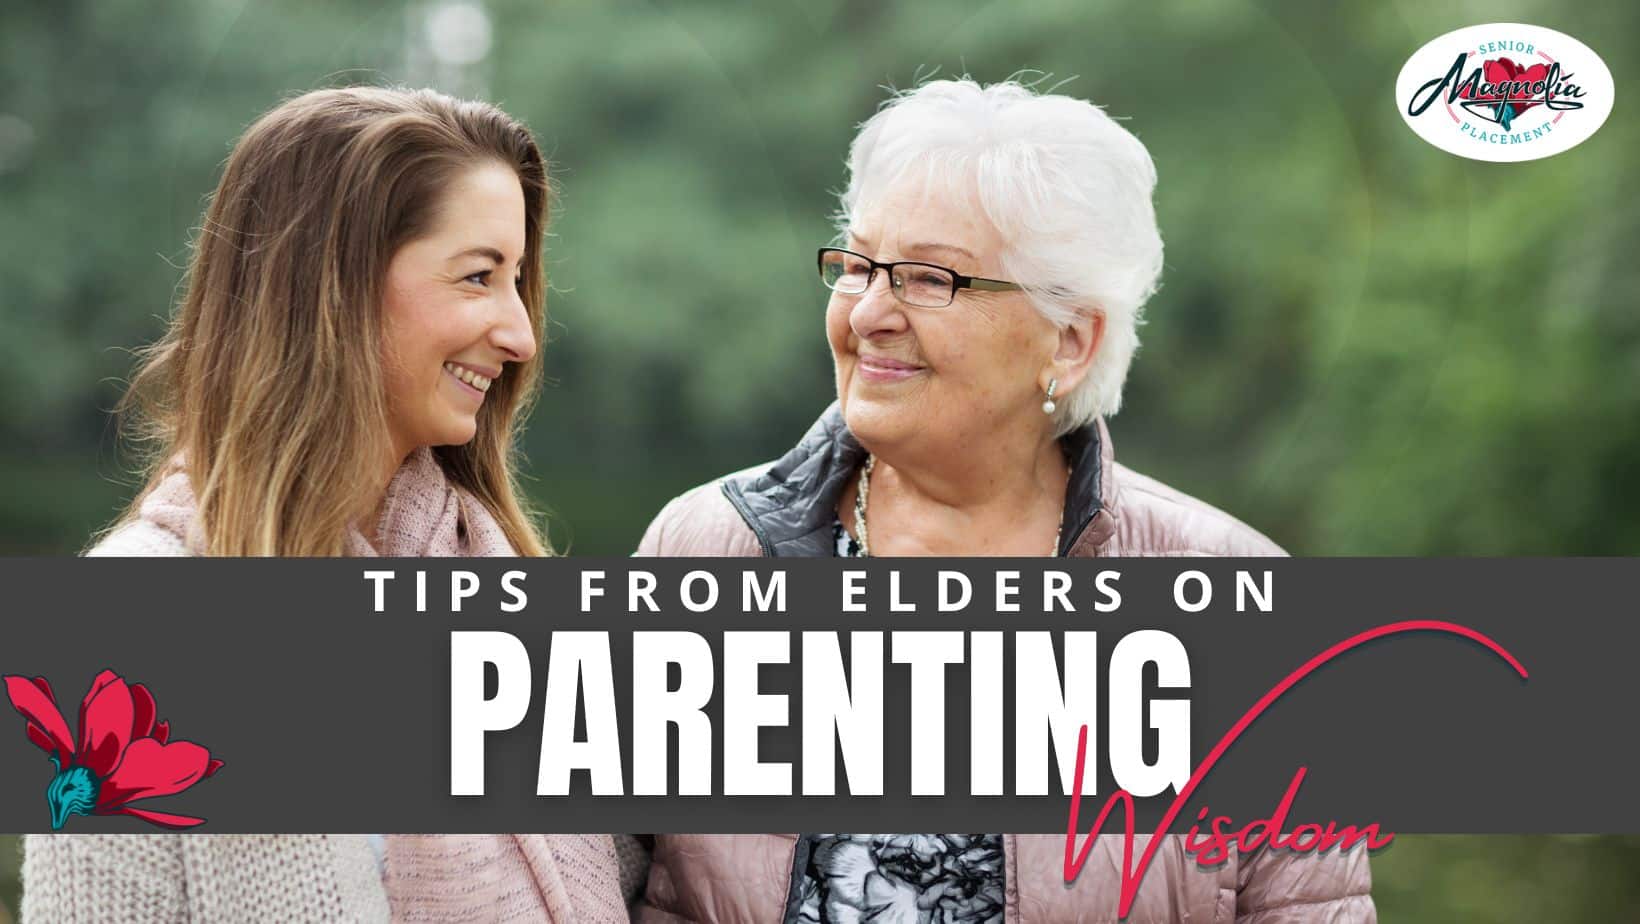 Tips from elders